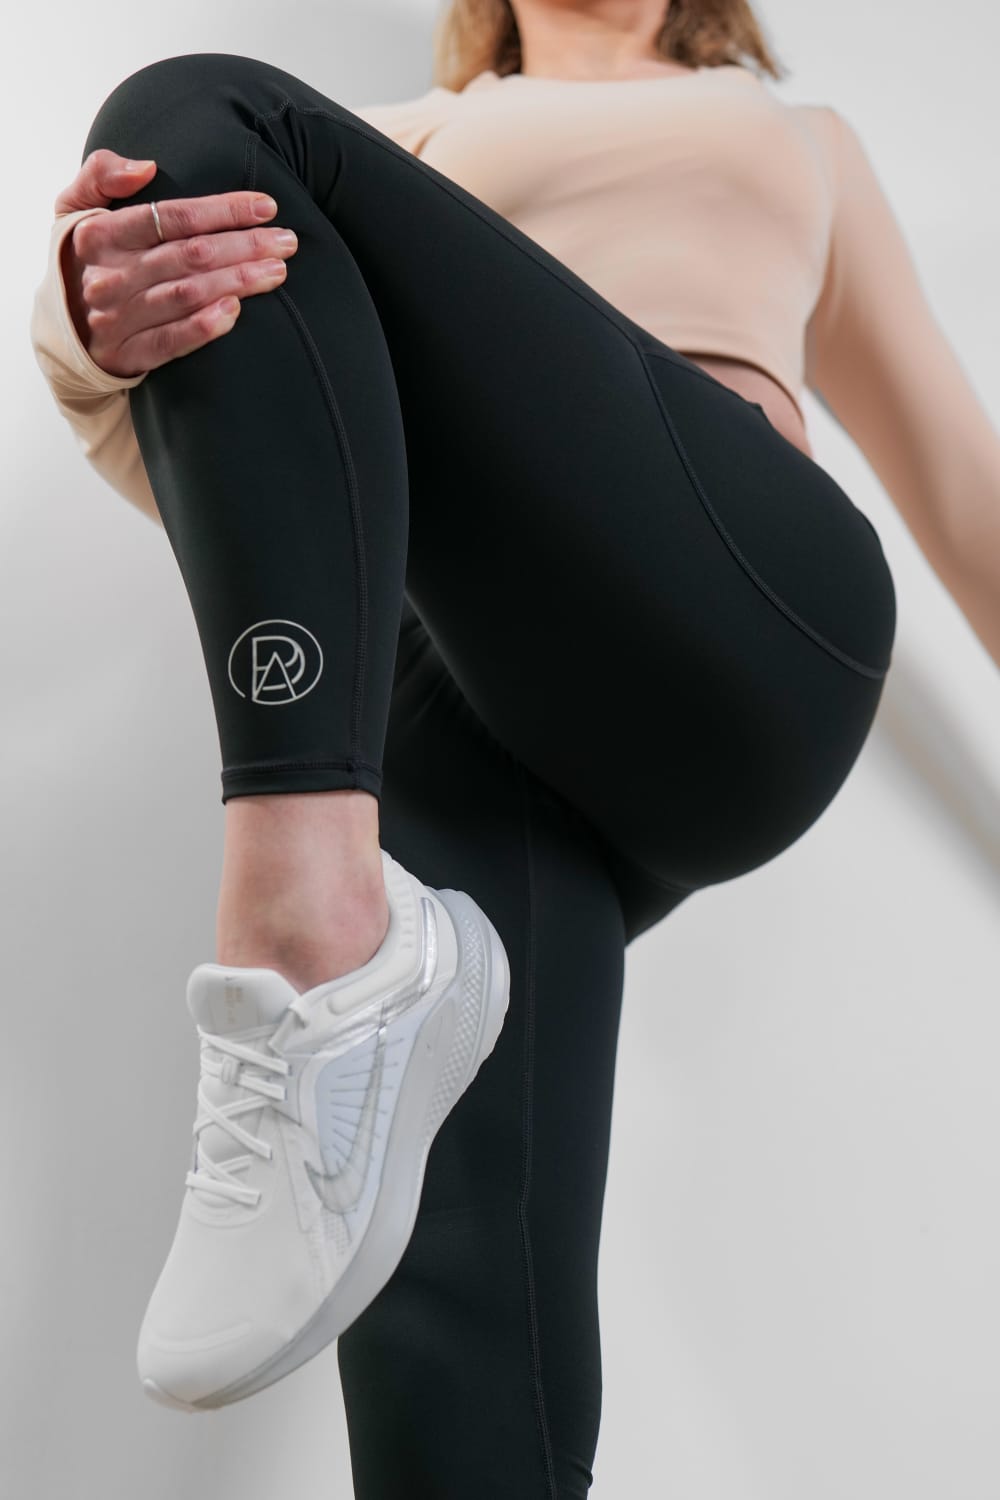 PADA Kneepadded Leggings For Yoga, Pilates and Gym – Pada